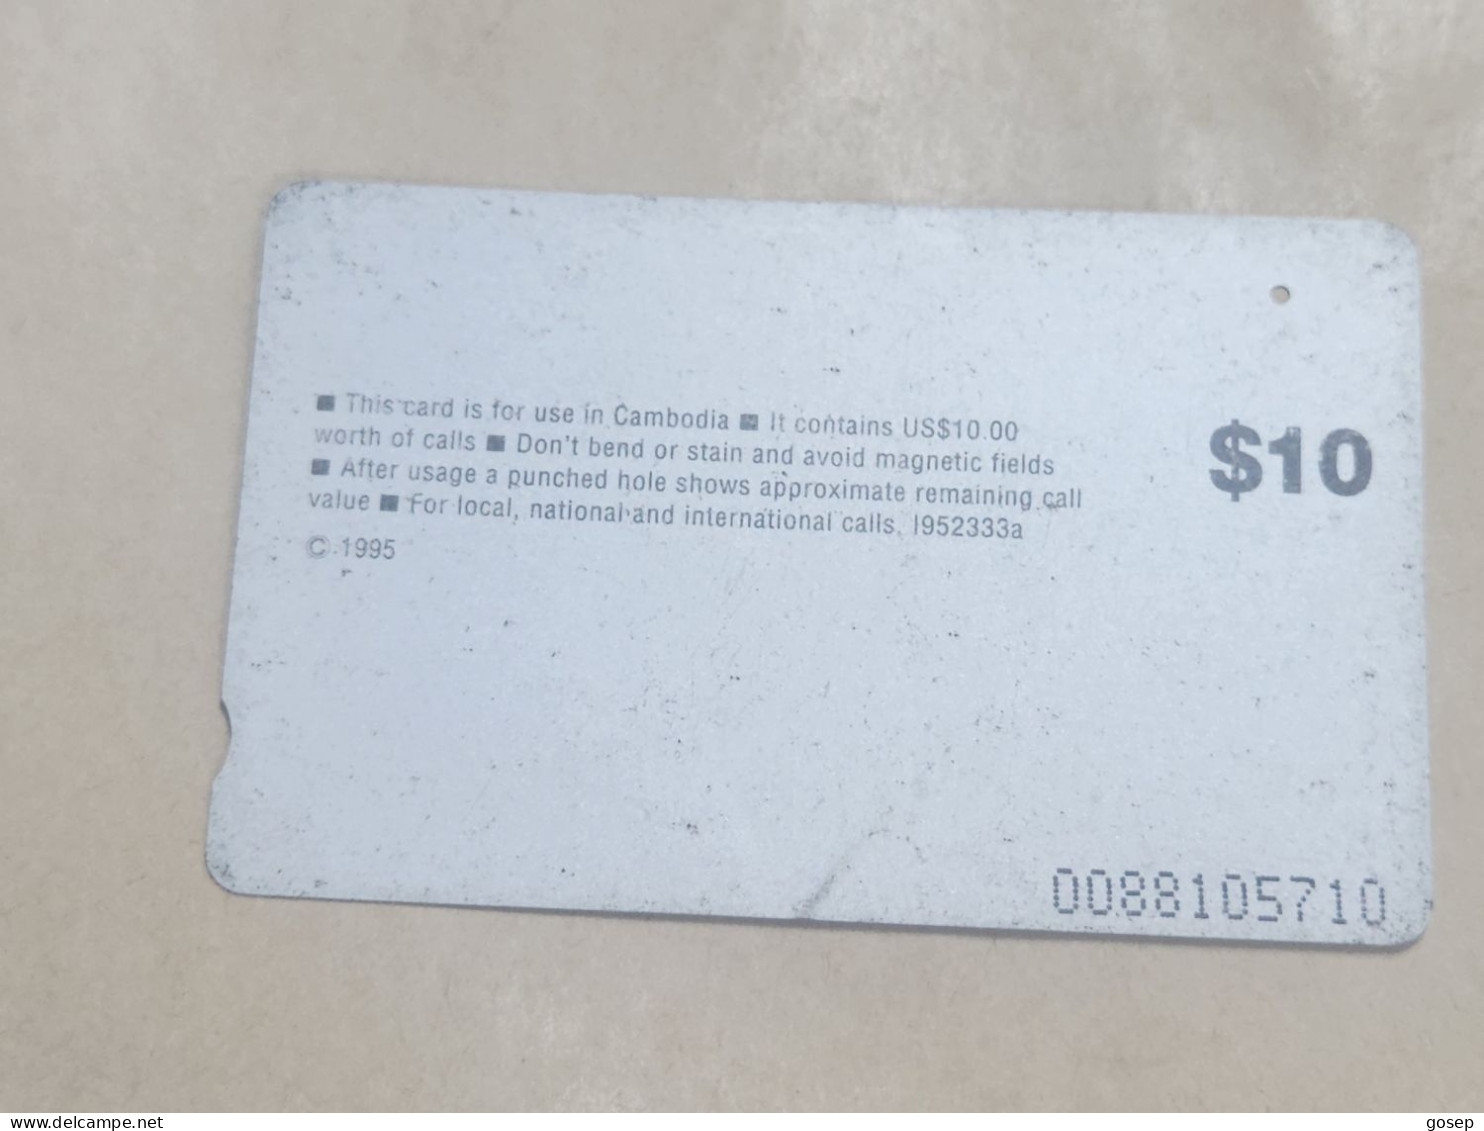 Cambodia-(I952333a)-SATELLITE DISH-(63)-(0088105710)-(tirage-13.000)-($10)-(rubbed)-used Card+1card Prepiad - Cambodia